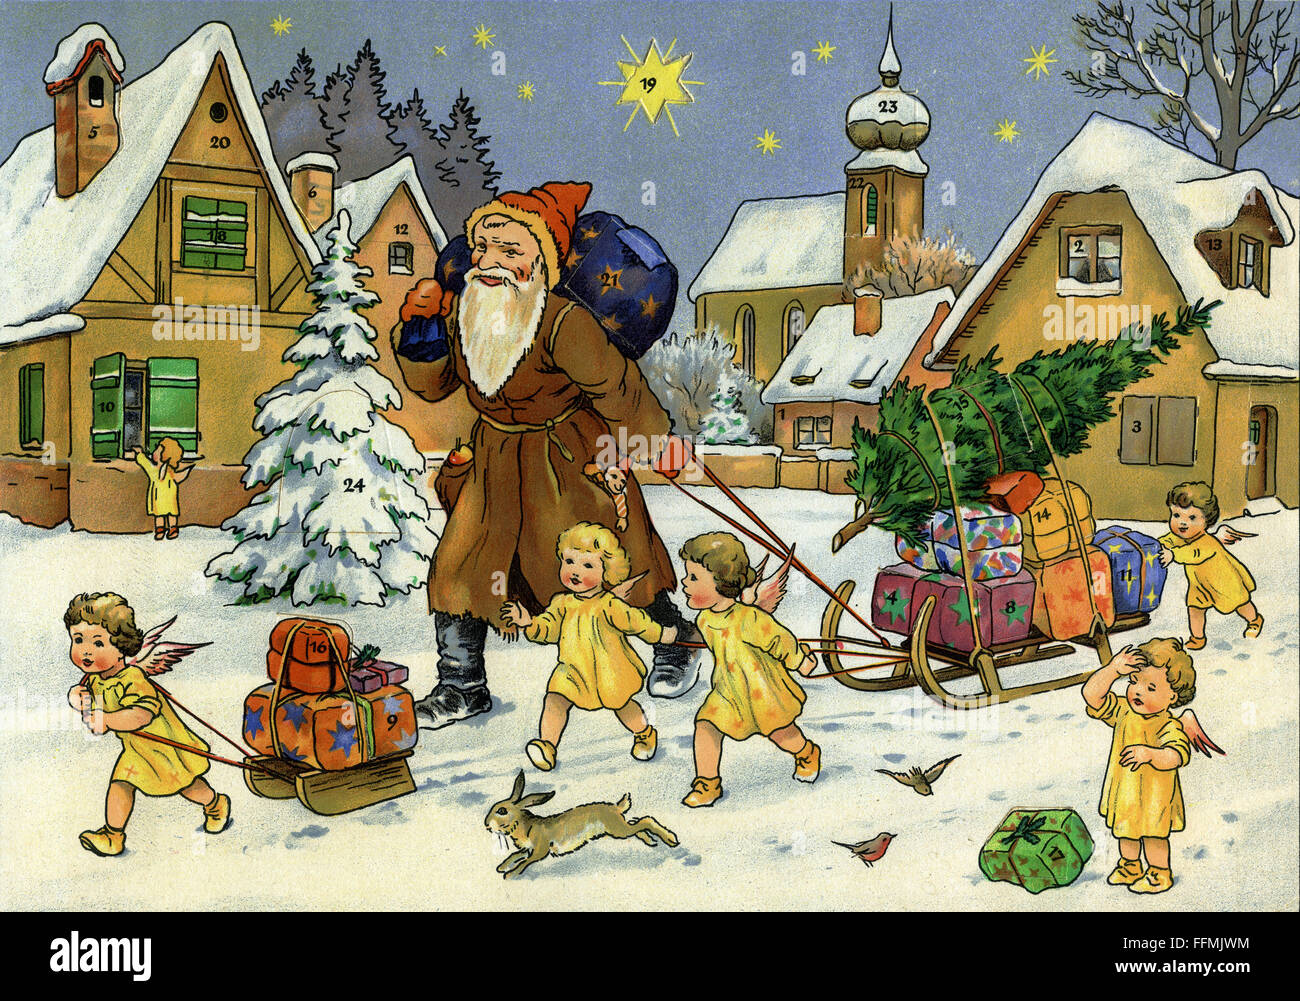 Weihnachten, Adventskalender, Weihnachtsmann, Nikolaus, kleiner Engel, Geschenke liefern, Deutschland, um 1948, zusätzliche-Rechte-Clearenzen-nicht verfügbar Stockfoto